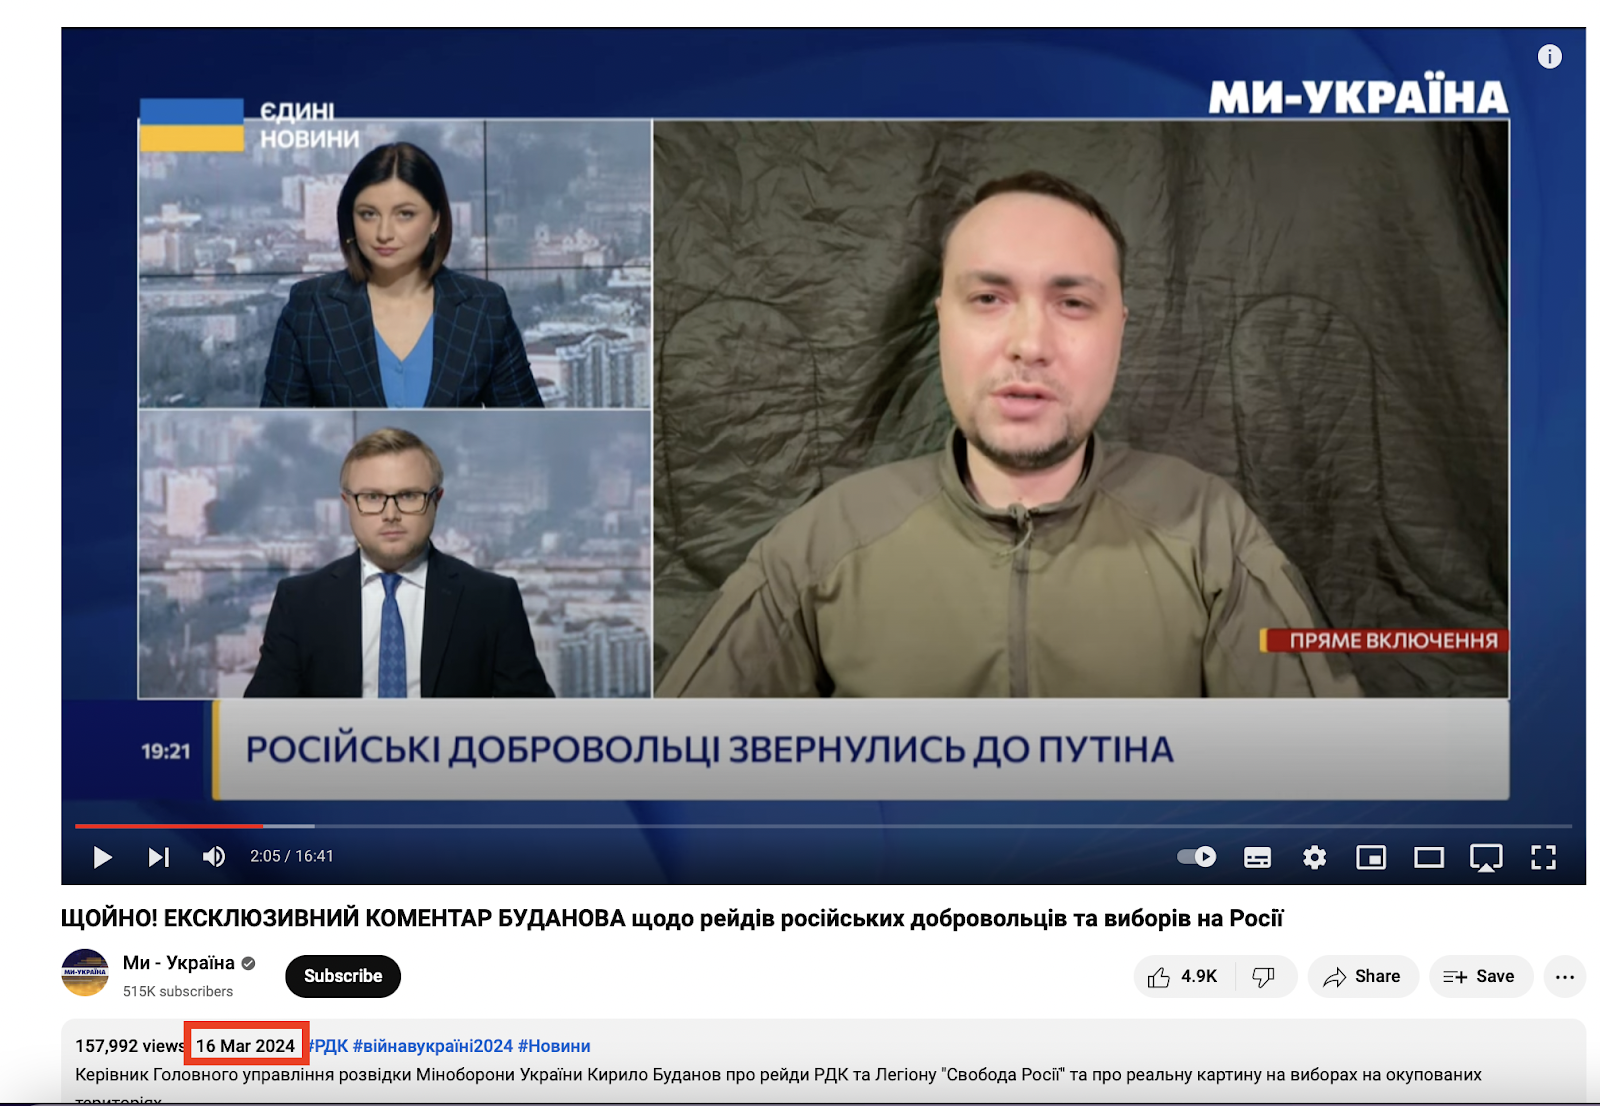 مقابلة كيريلو بودانوف رئيس الاستخبارات العسكرية في الجيش الأوكراني مع قناة My-Ukraina